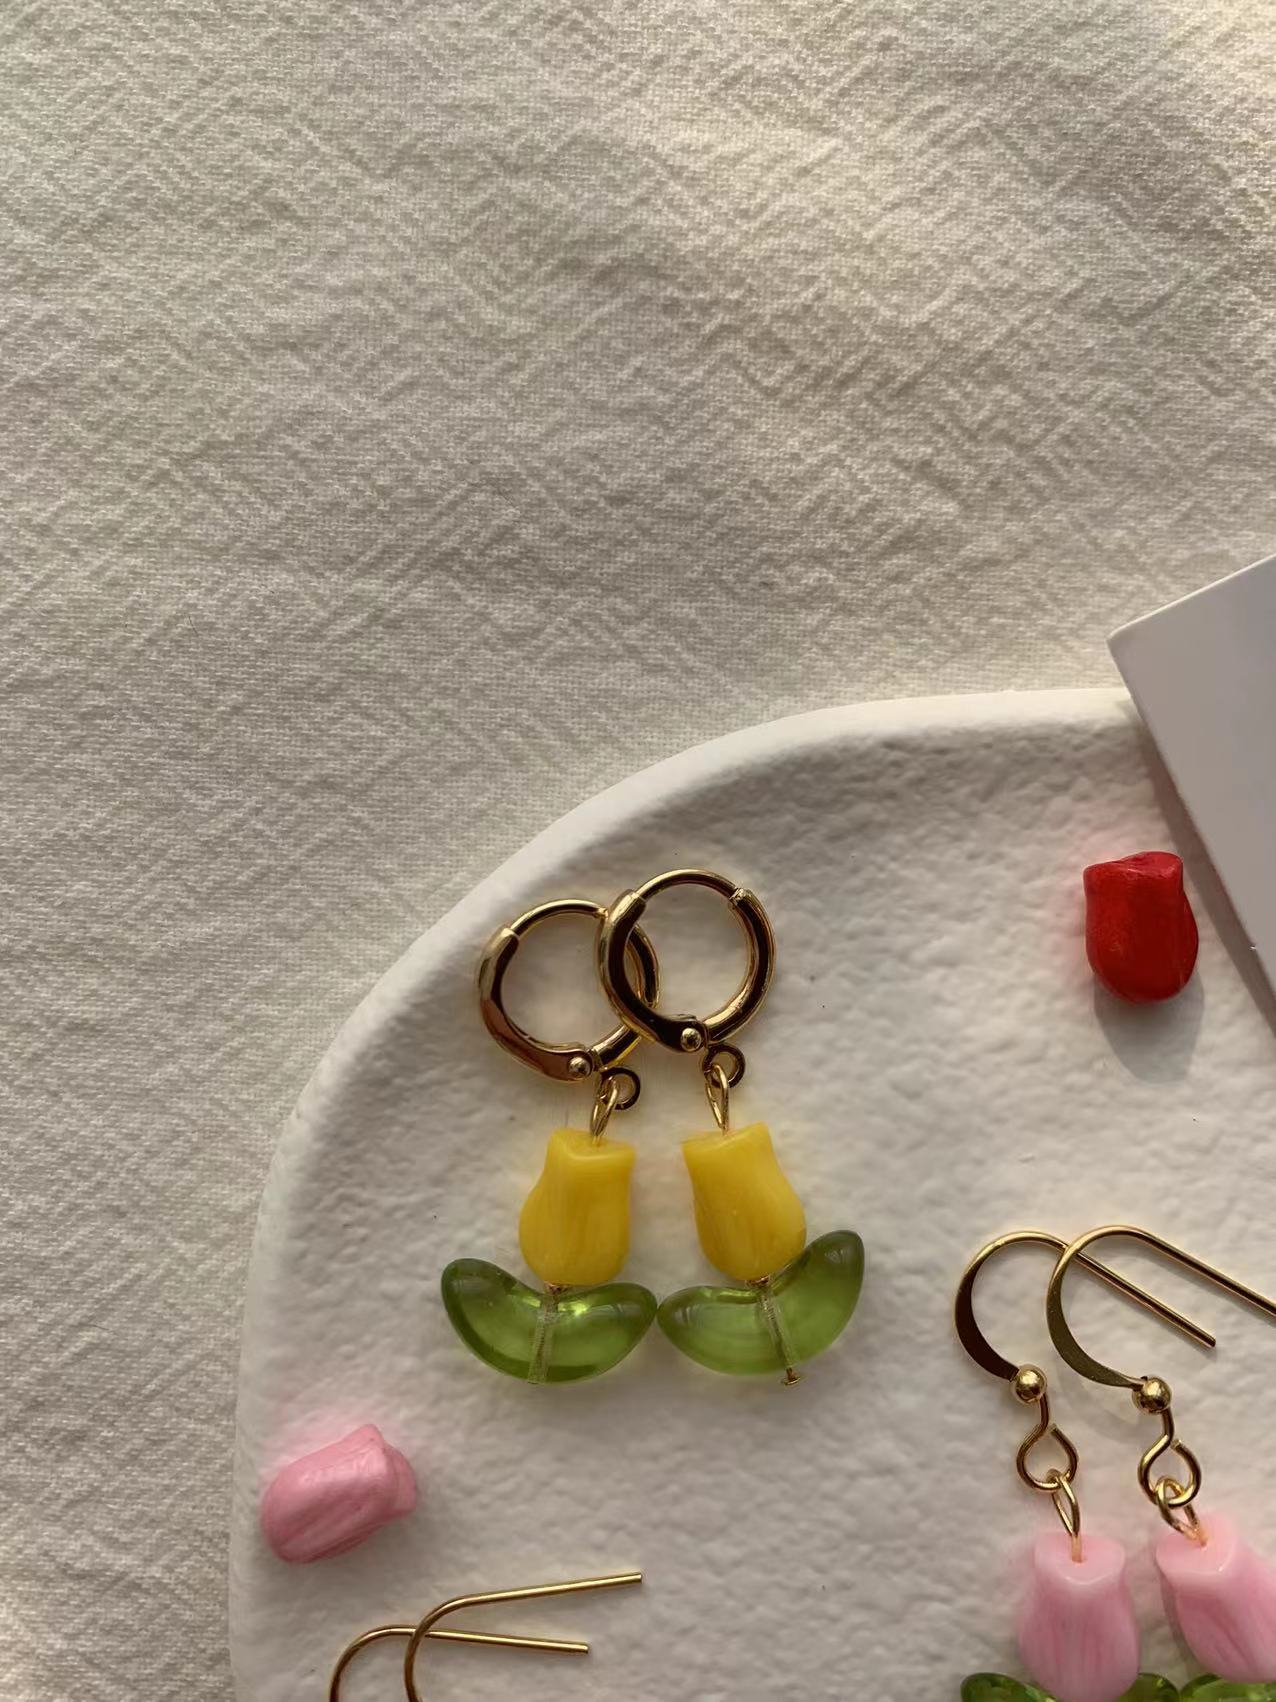 cute tulips earrings